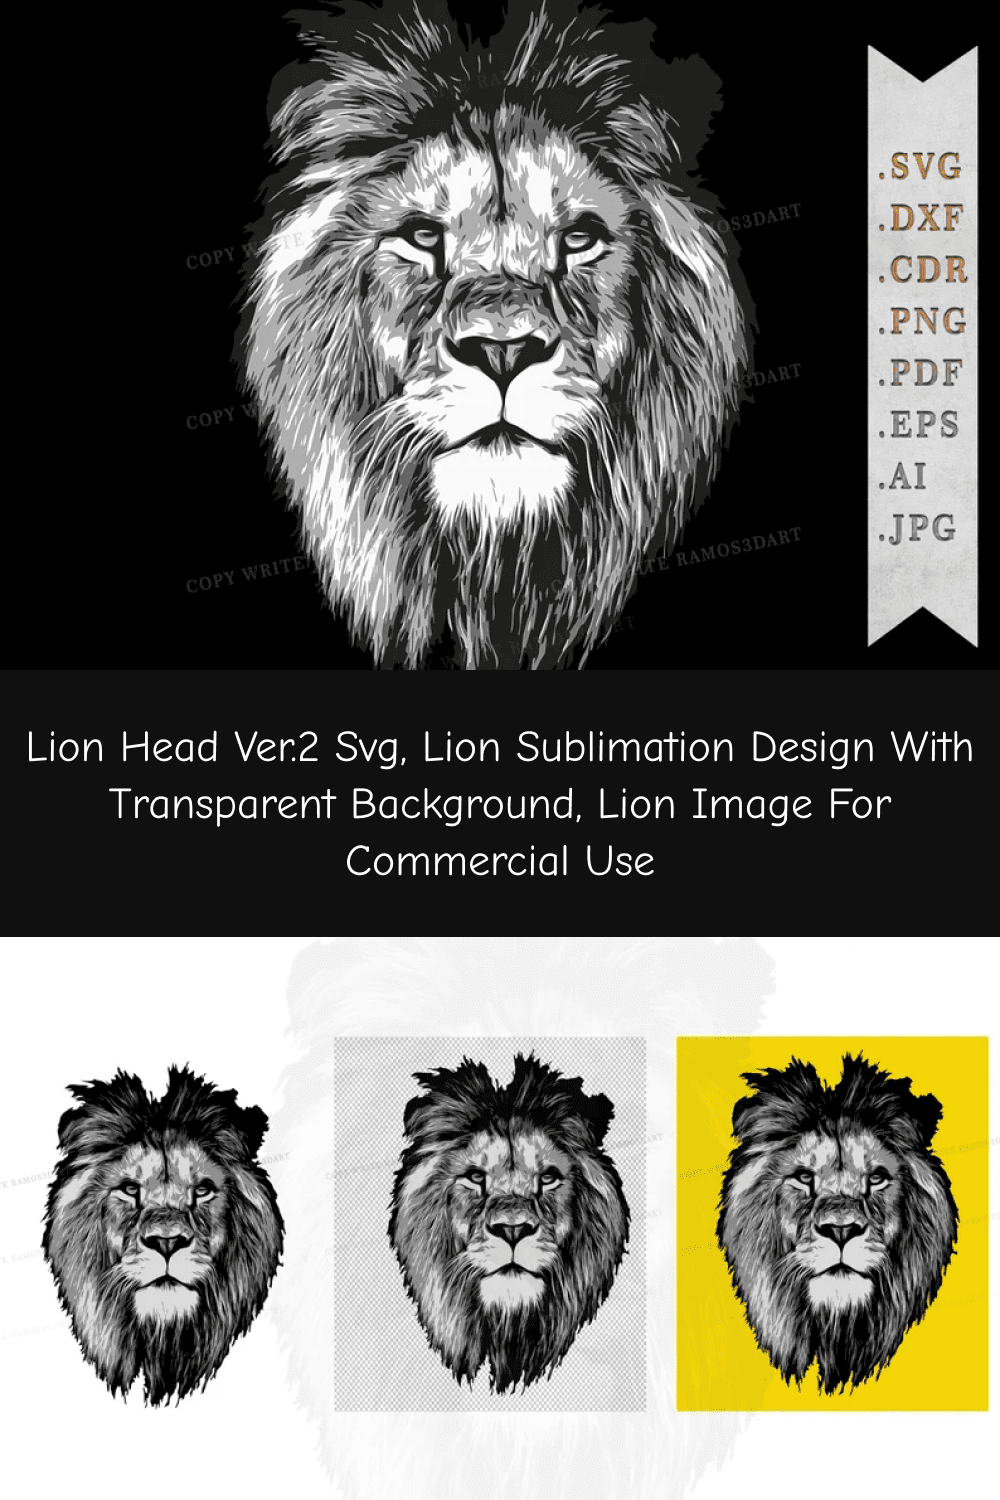 Lion Sublimation Design with Transparent Background.